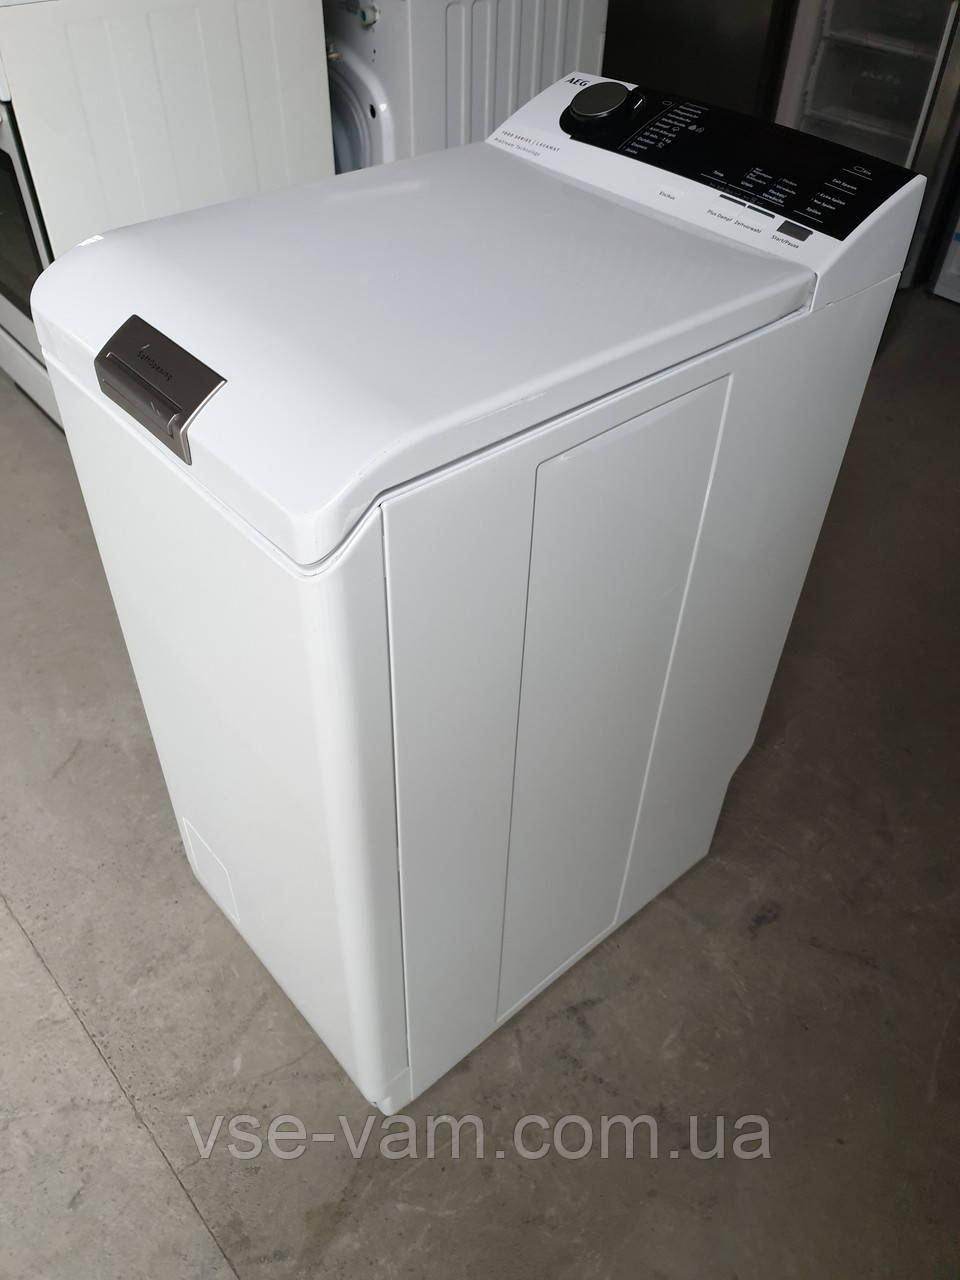 Купити Пральна машина AEG lavamat 7000 Series ProSteam 7 KG / 2020-го року  випуску / L7TE74275, ціна 17499 ₴ - Prom.ua (ID# 1585039812)